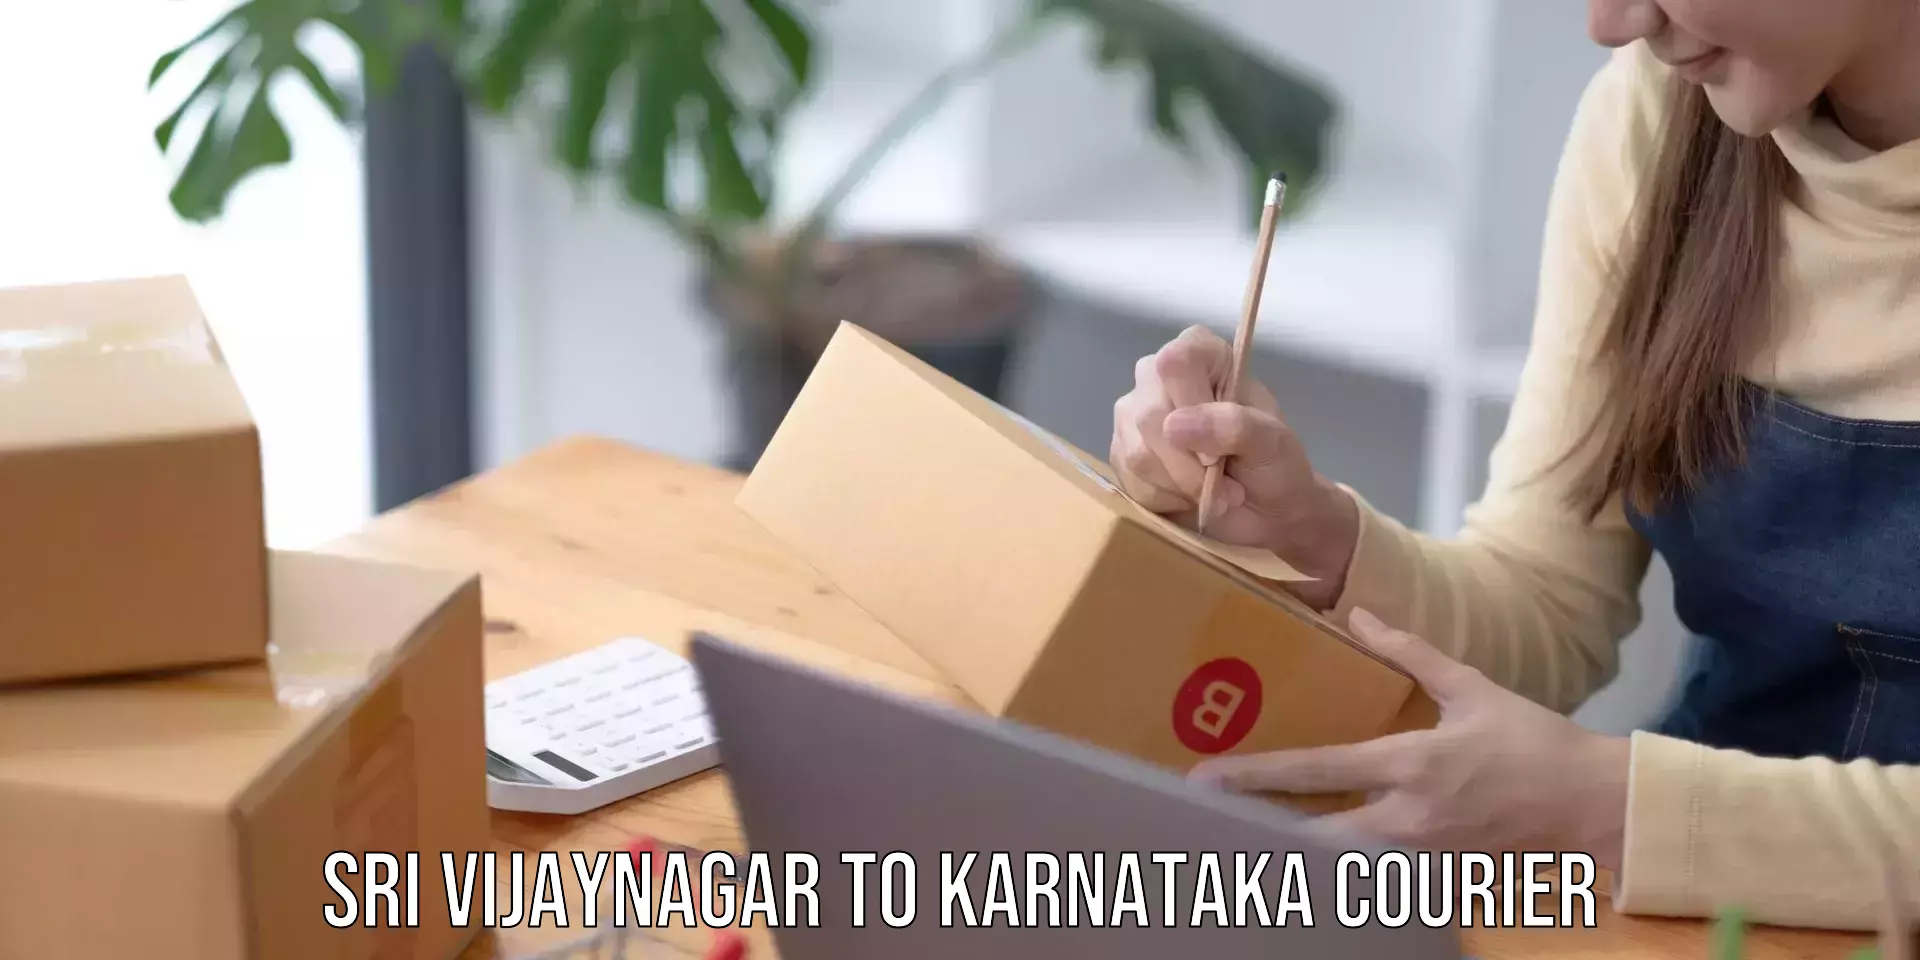 Courier service partnerships Sri Vijaynagar to Karnataka